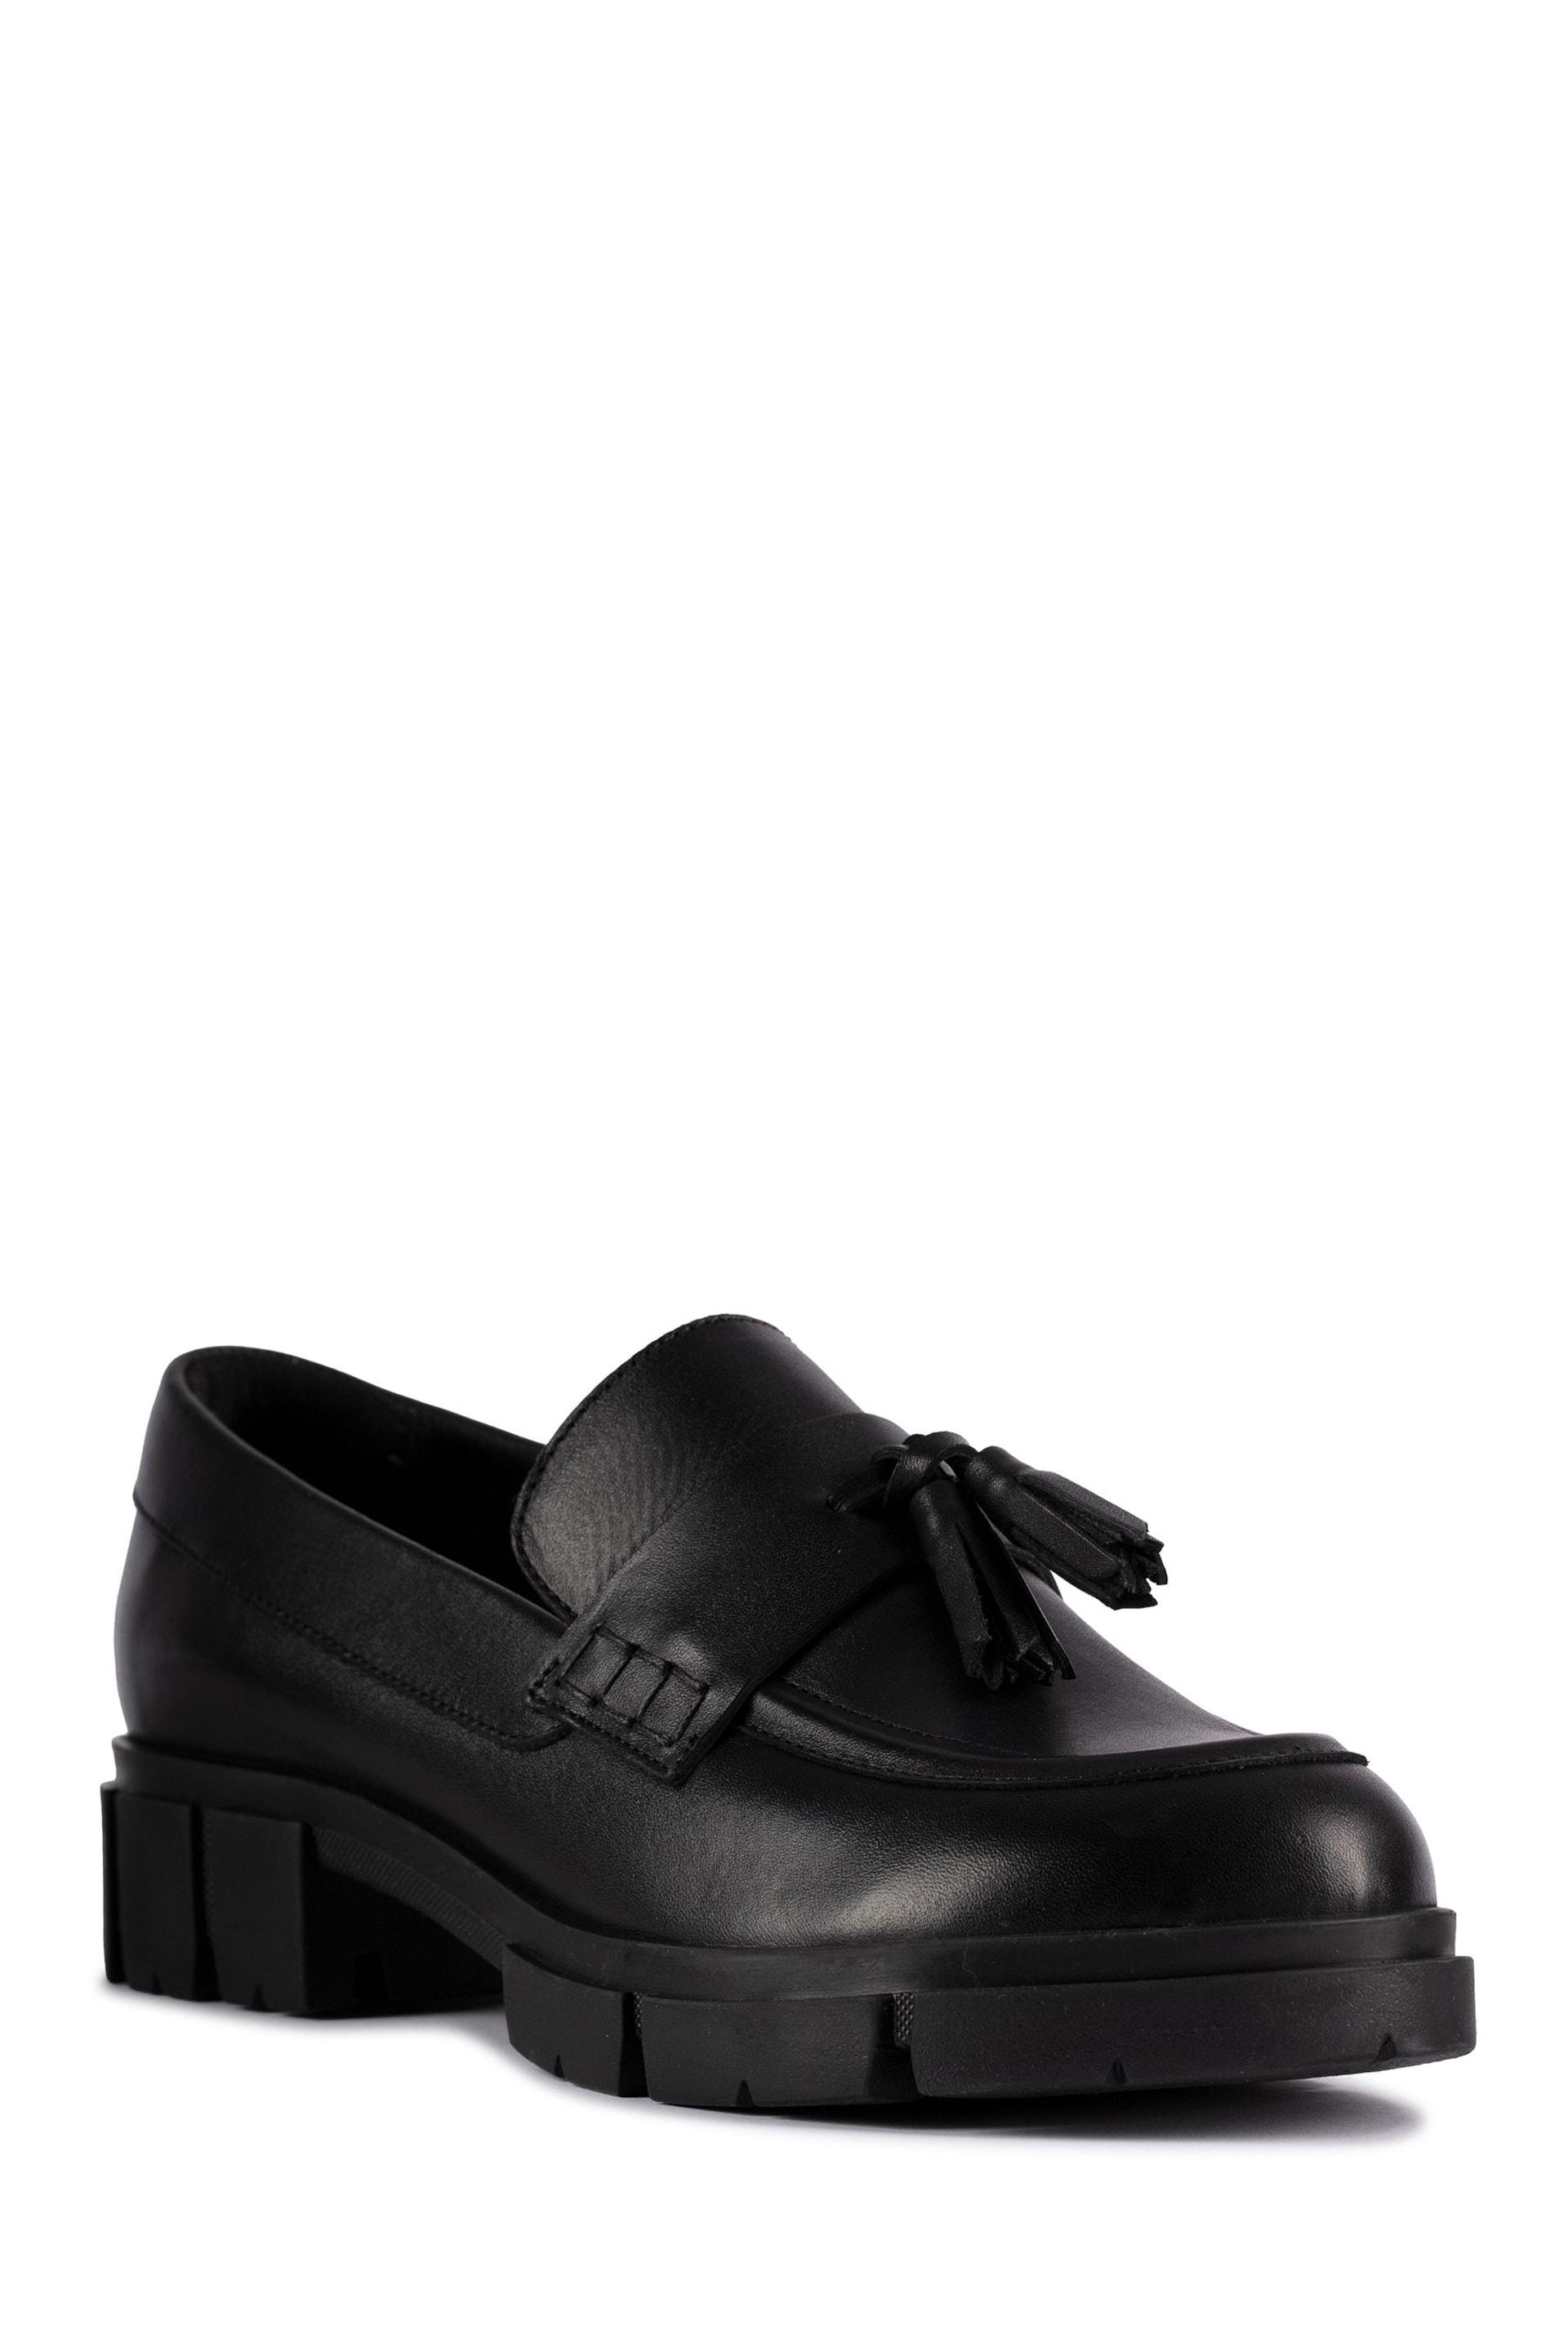 Clarks Black Teala Loafer Shoes - Image 3 of 7